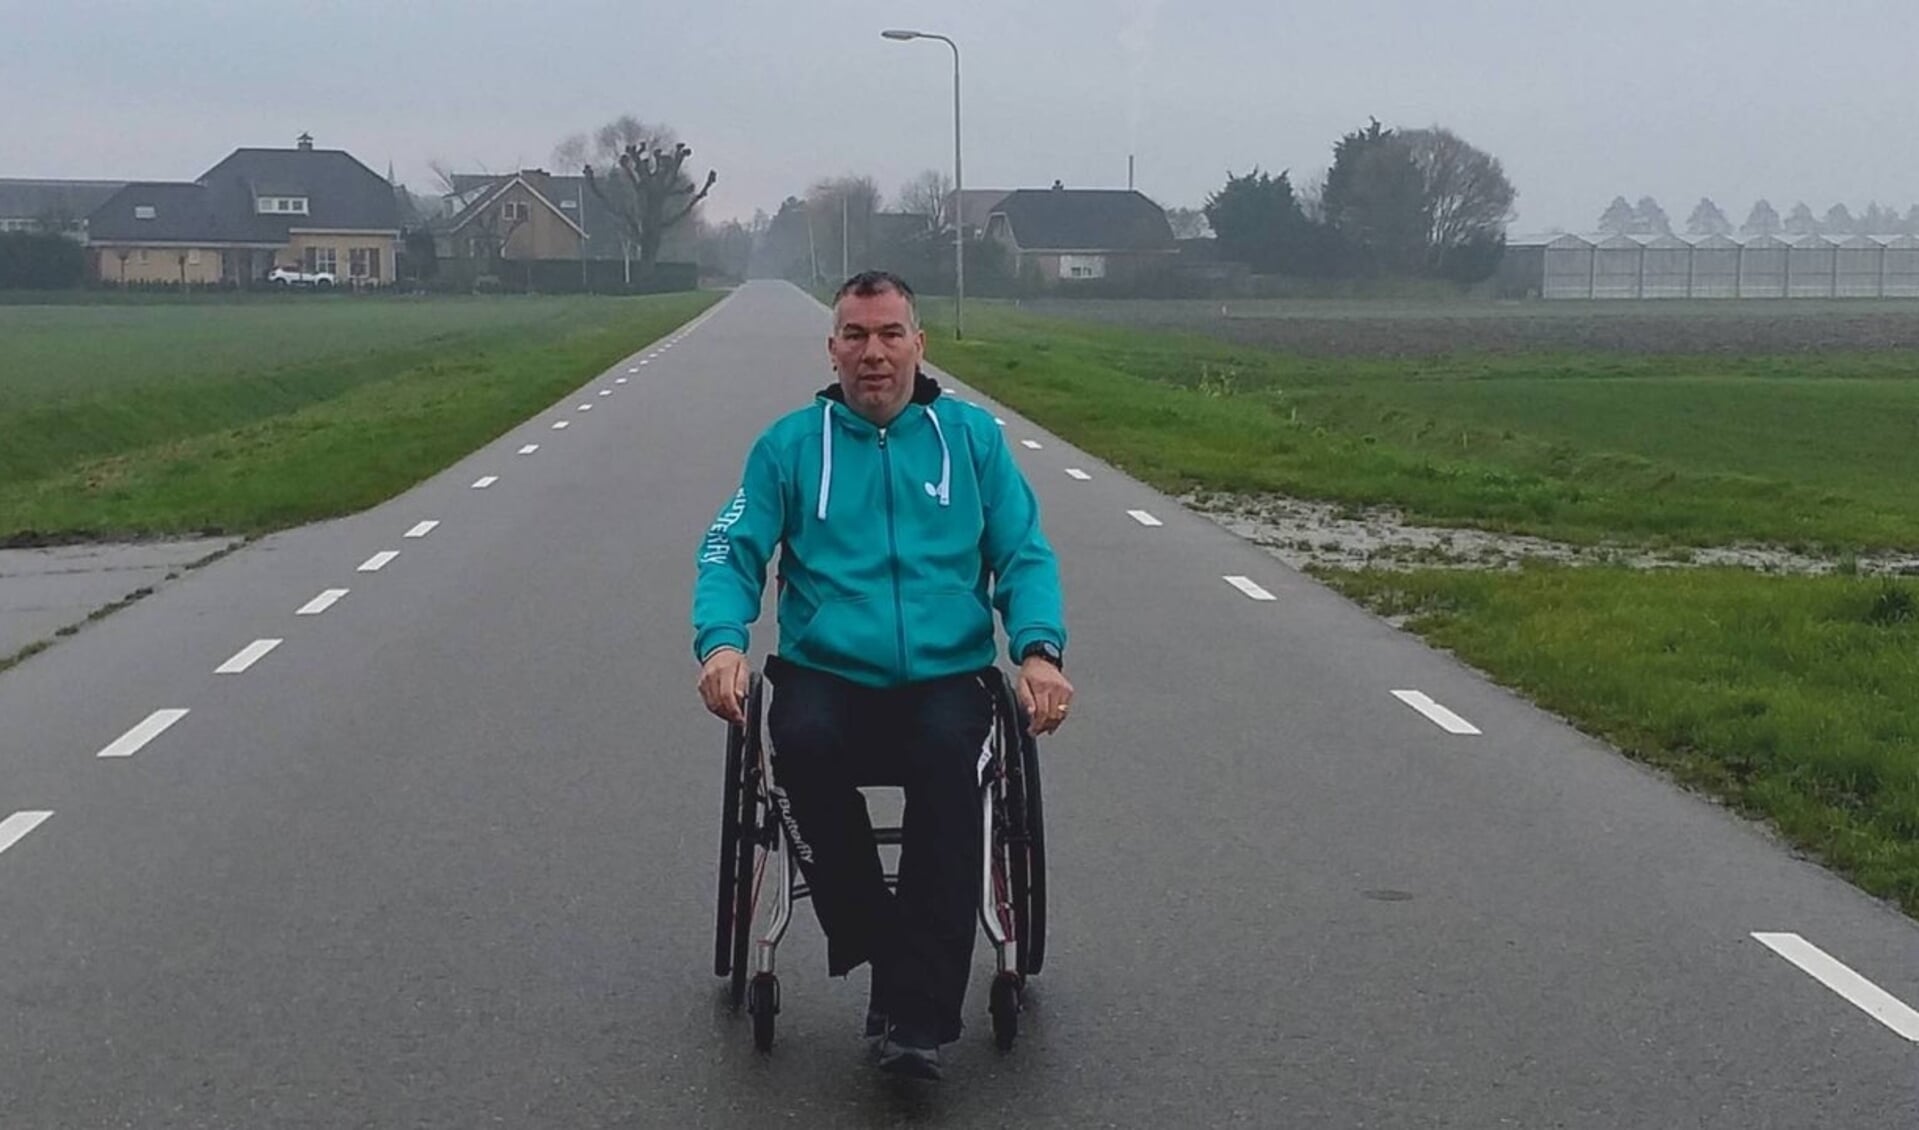 André de Knegt aan het trainen rondom zijn woonplaats Moerkapelle voor een halve marathon in mei.